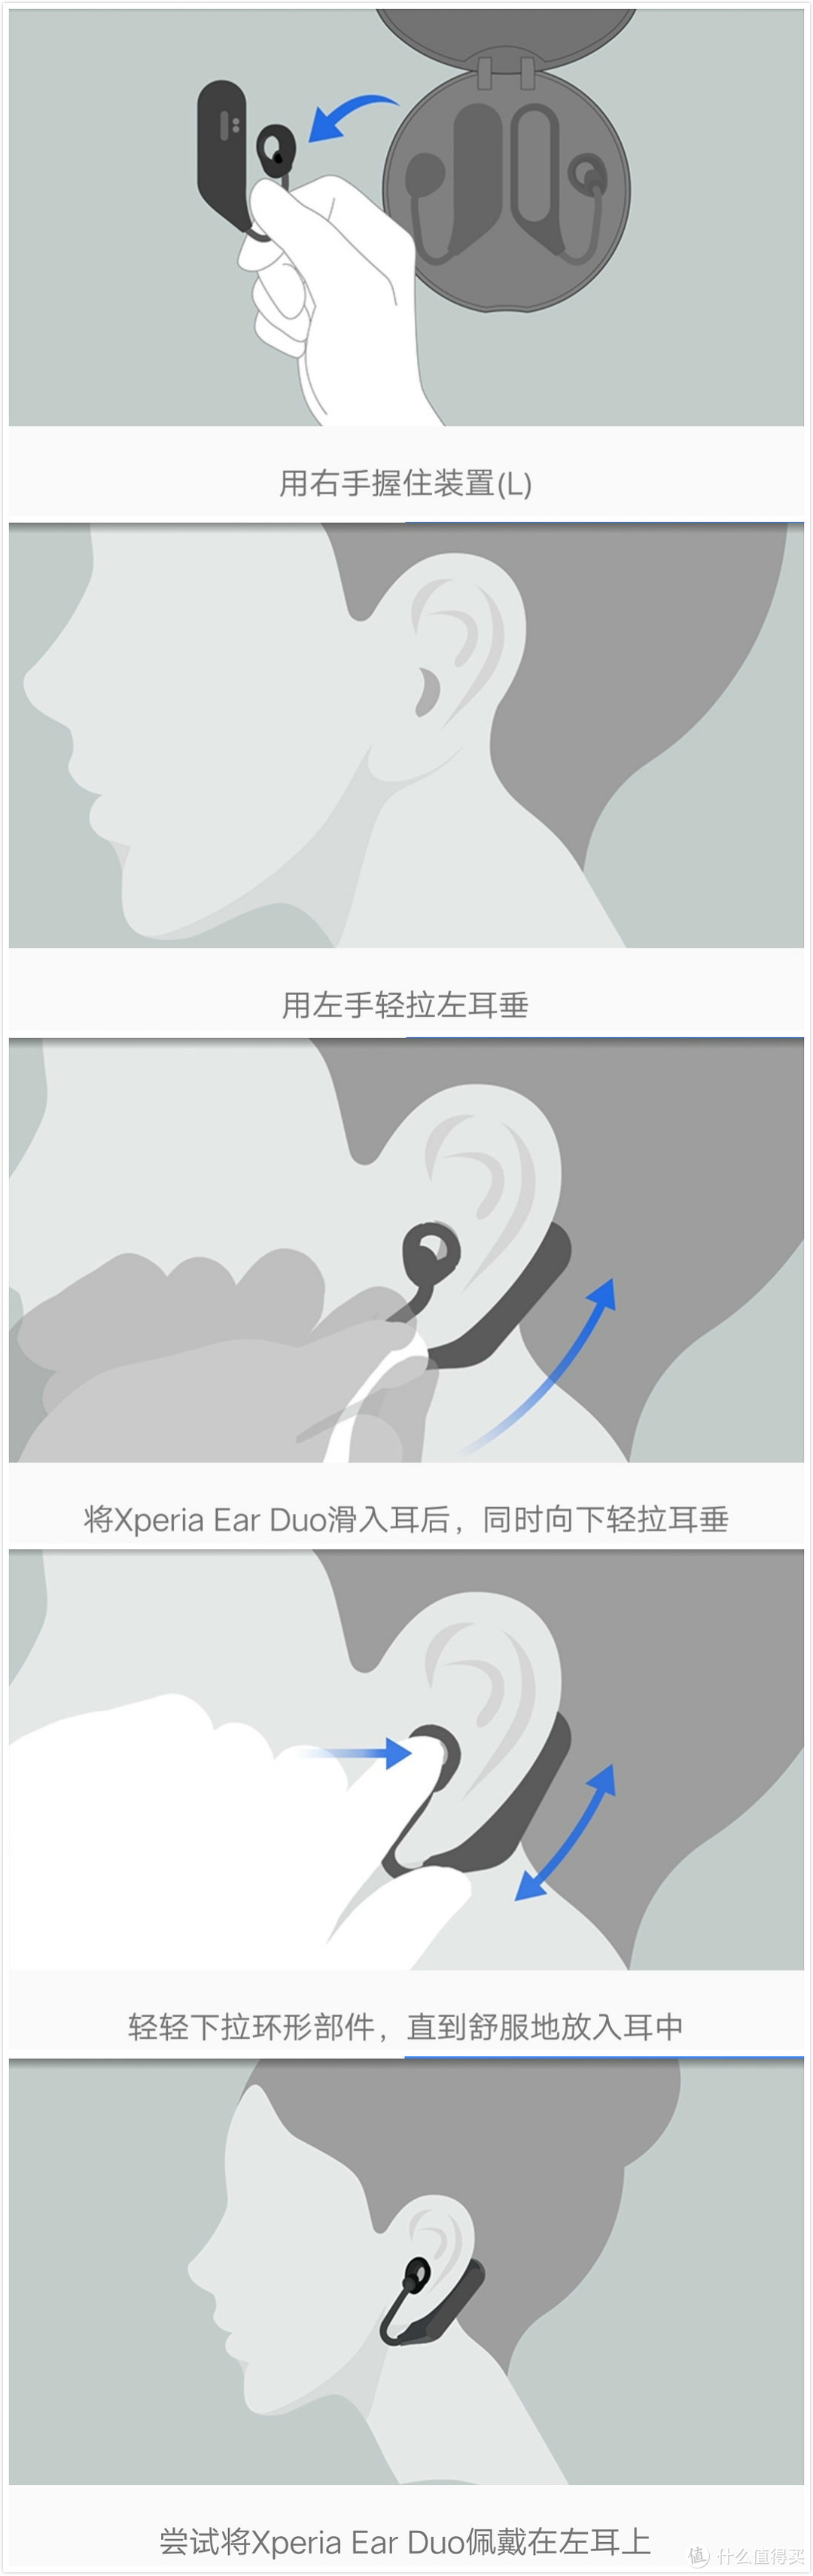 ​可能是最像助听器的耳机——Sony Xperia Ear Duo开箱